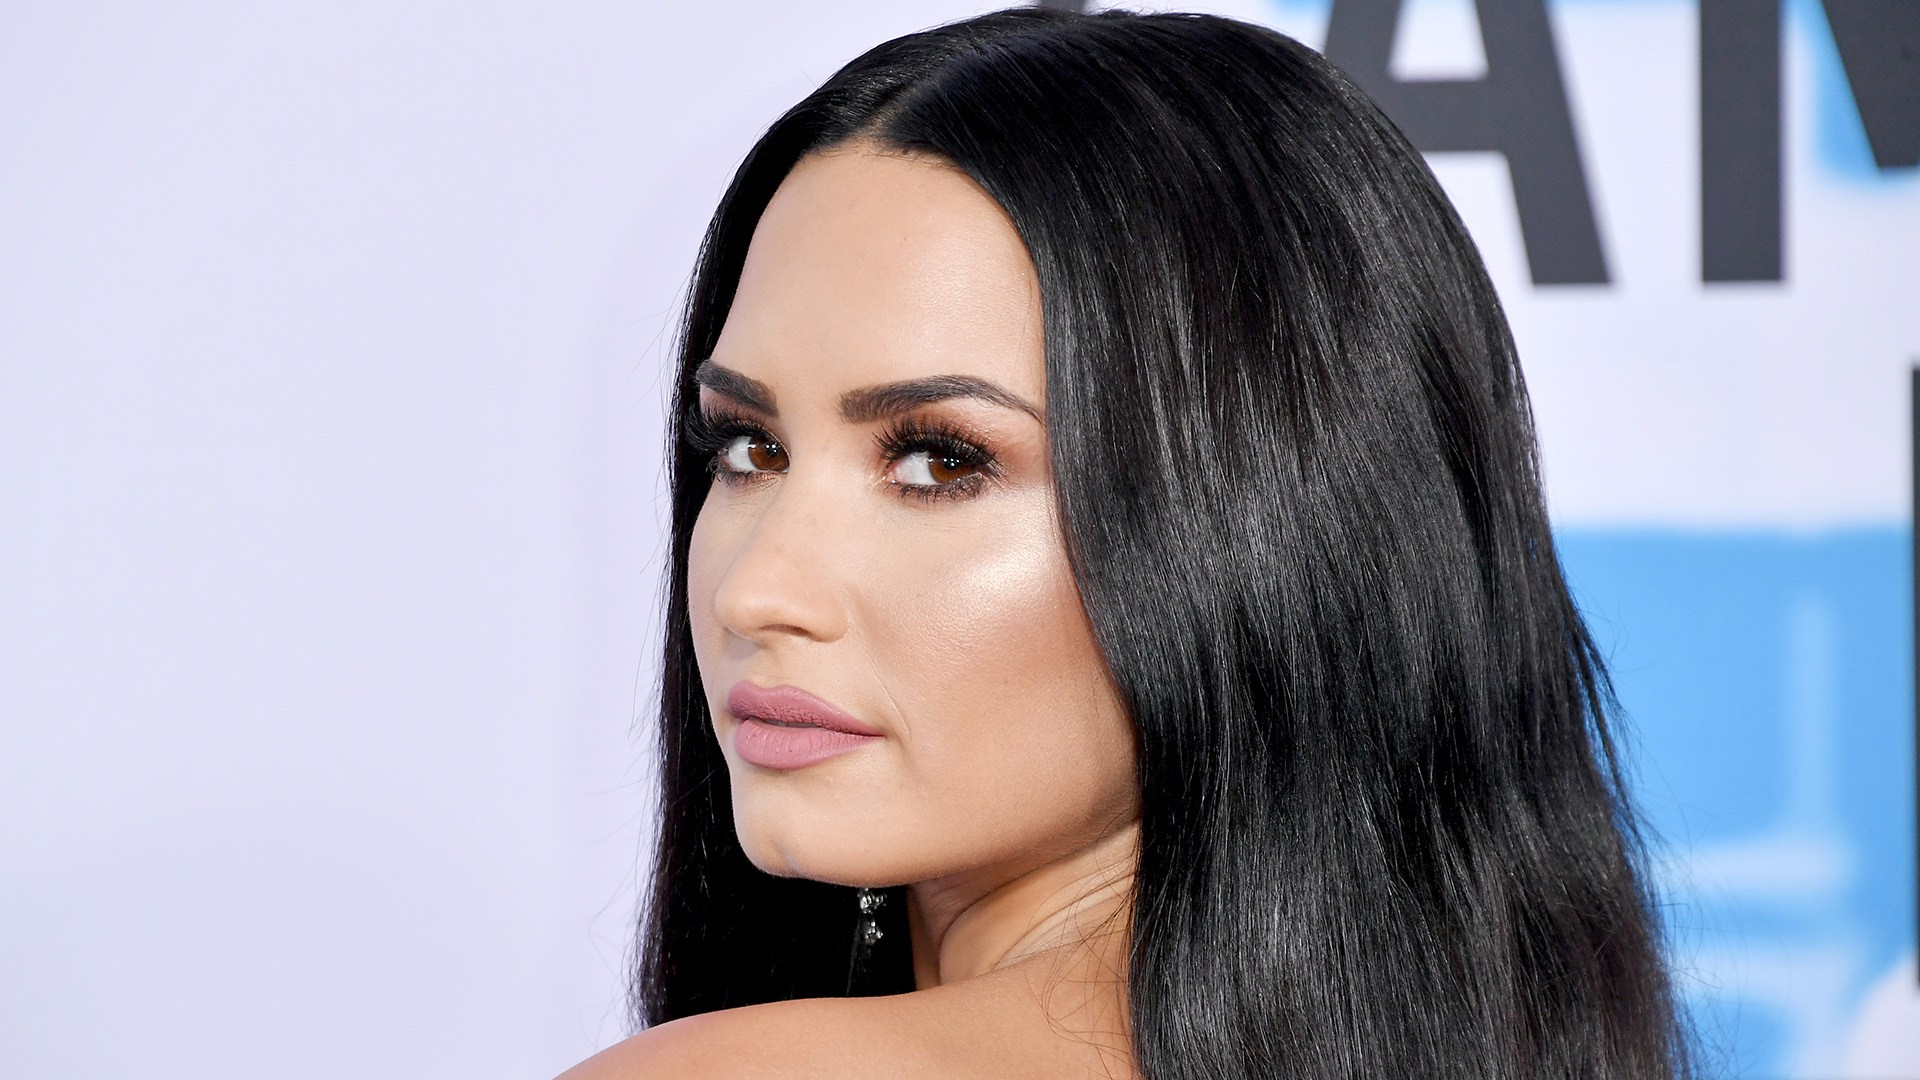 Demi Lovato pide perdón por sus adicciones en su nuevo tema “Sober”